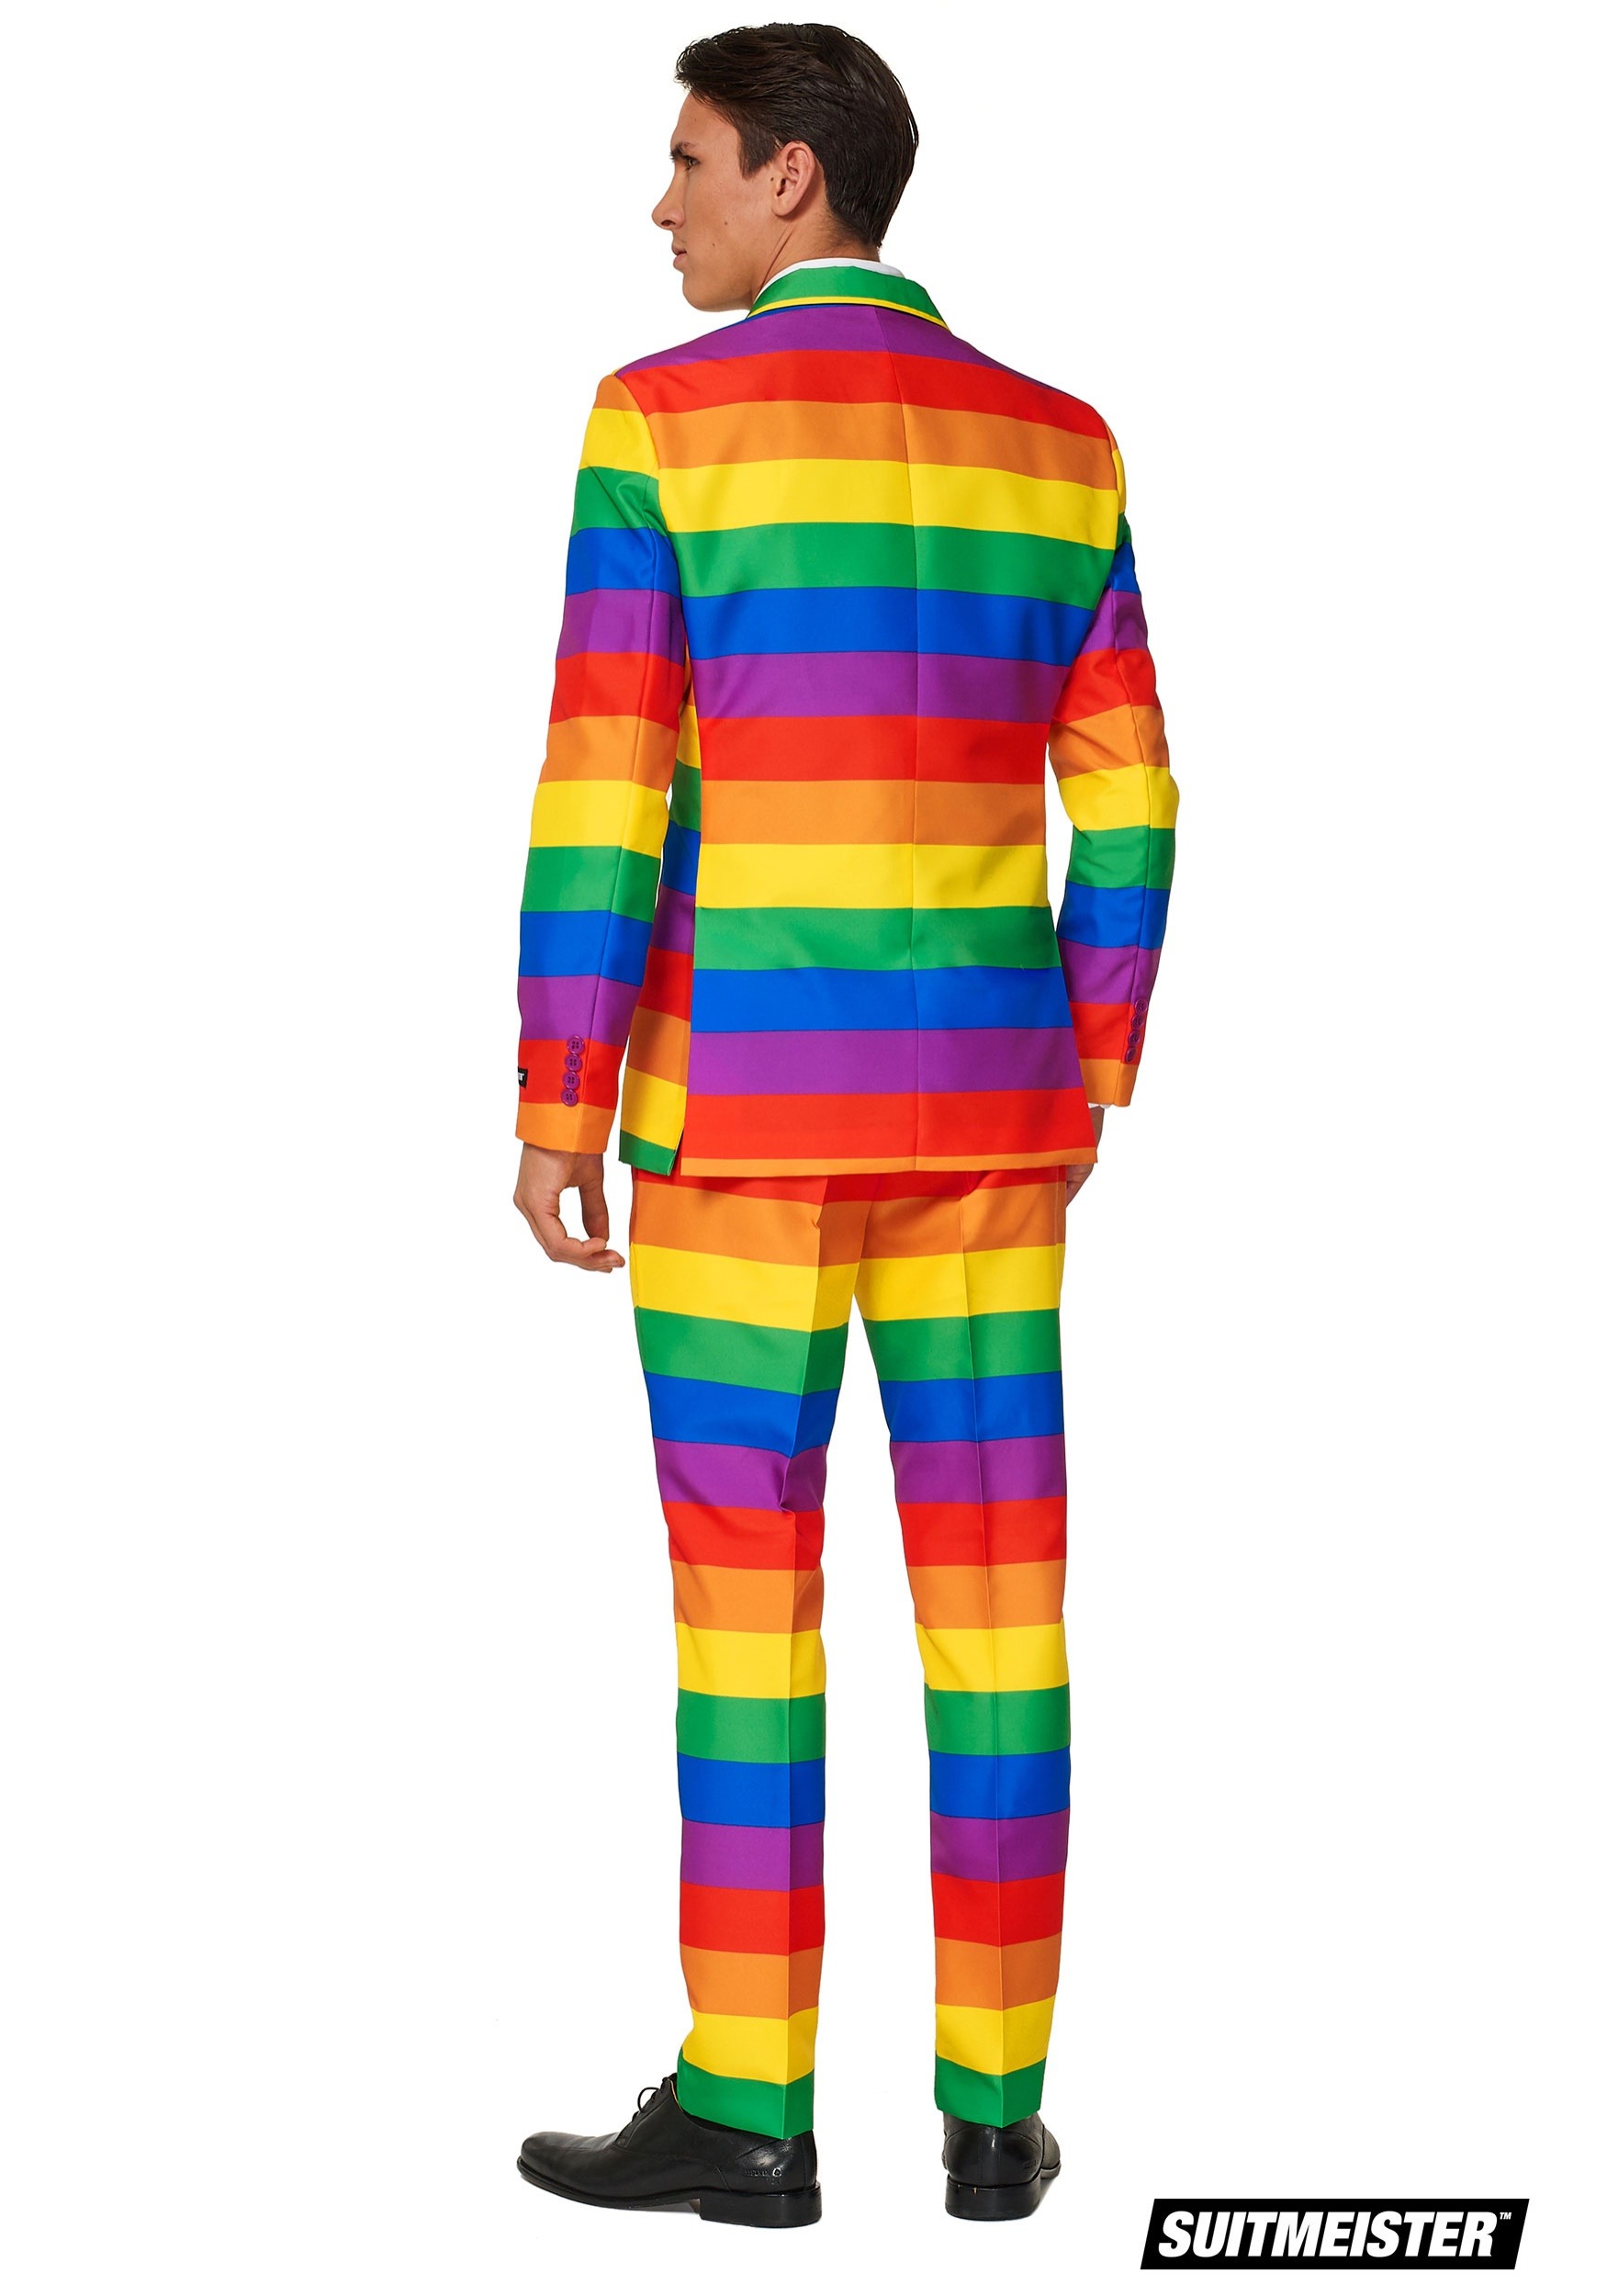 Men's Rainbow Suitmeister Suit Fancy Dress Costume